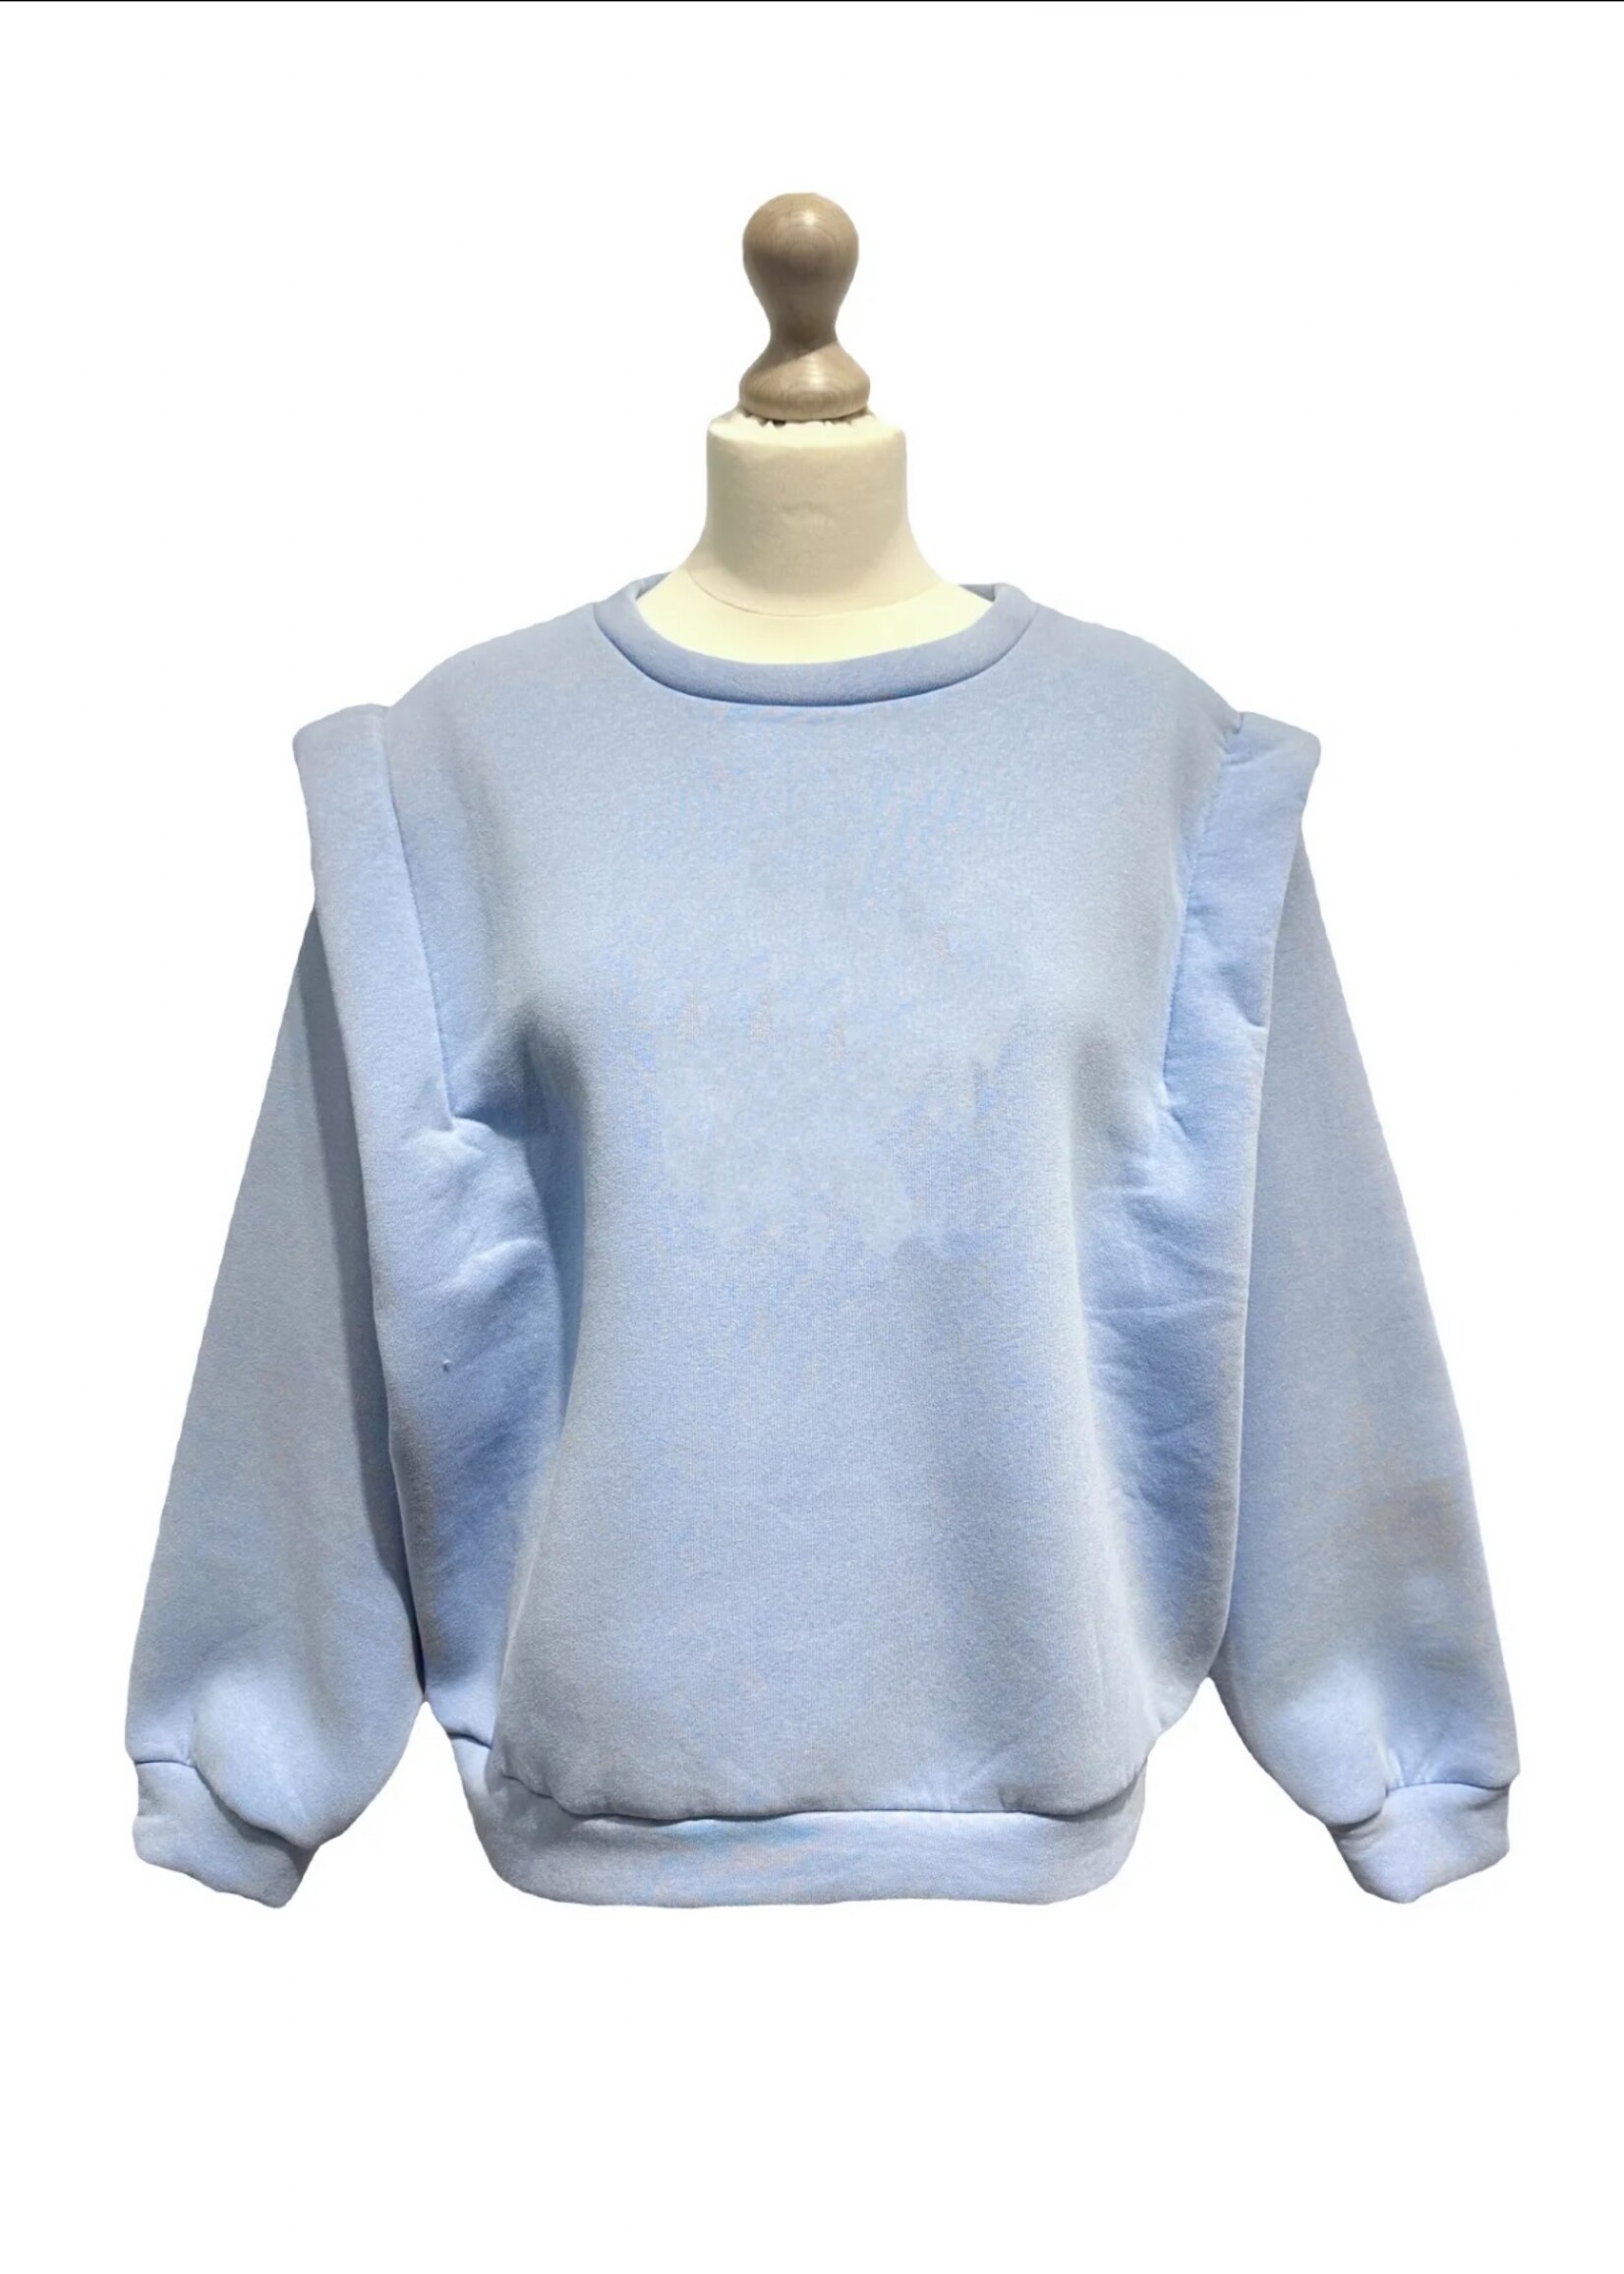 Guts & Goats Felice Blue Sweater